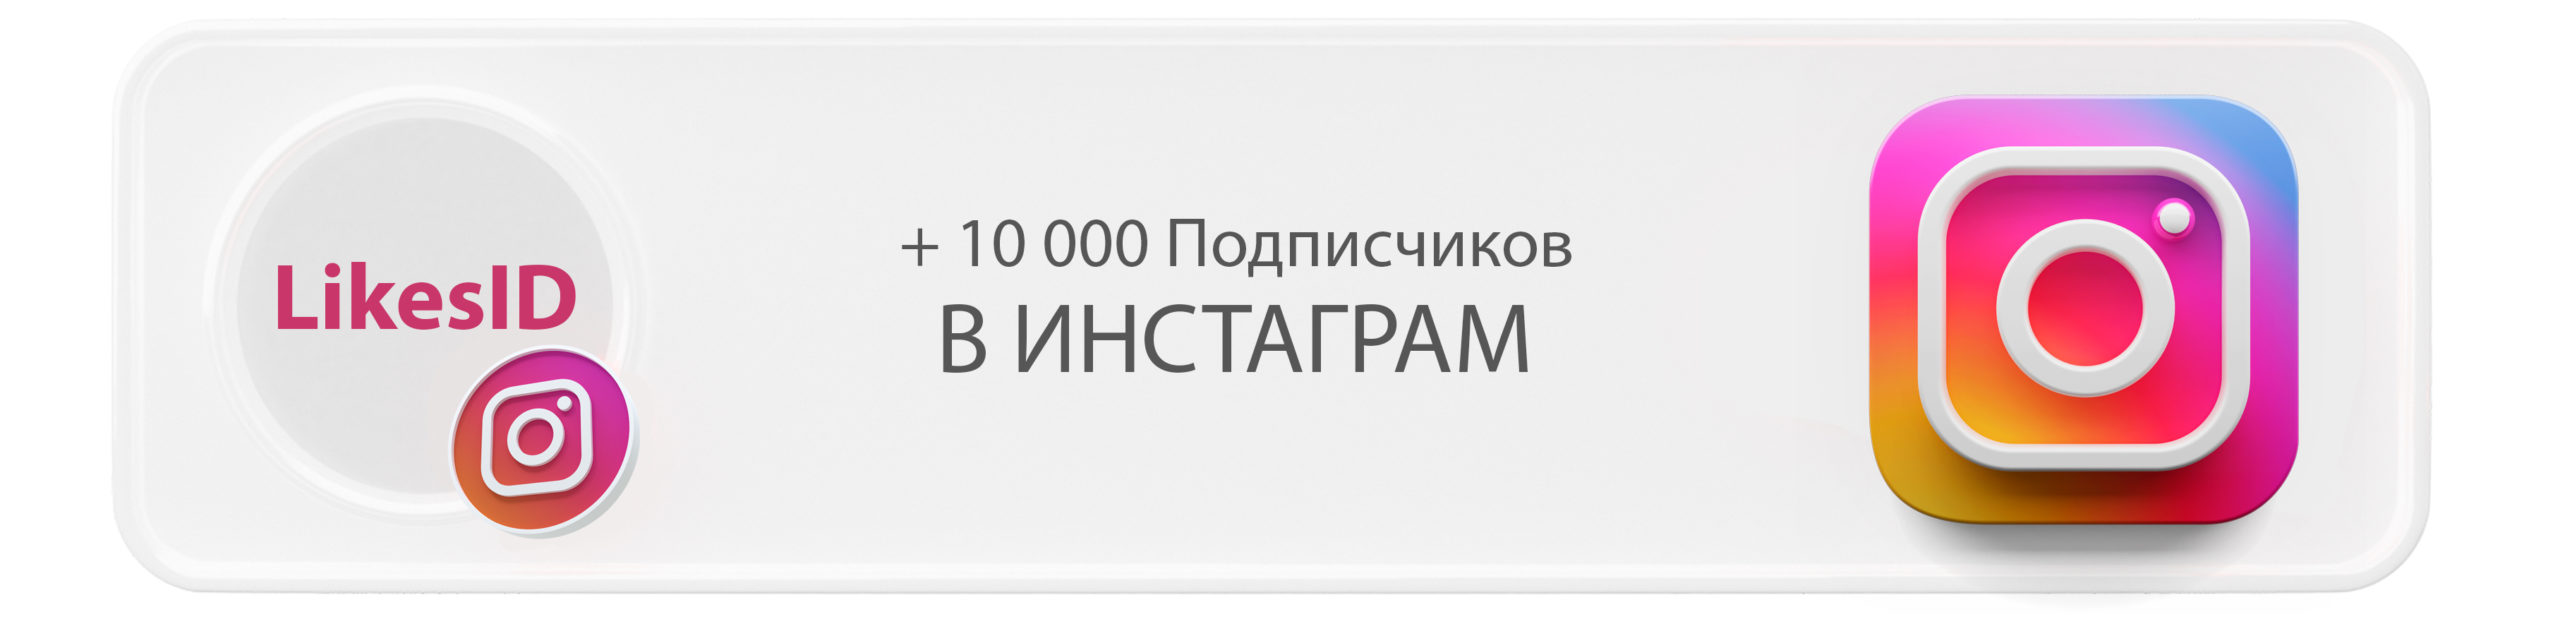 10000 подписчиков в Инстаграм с LikesID — изображение 1